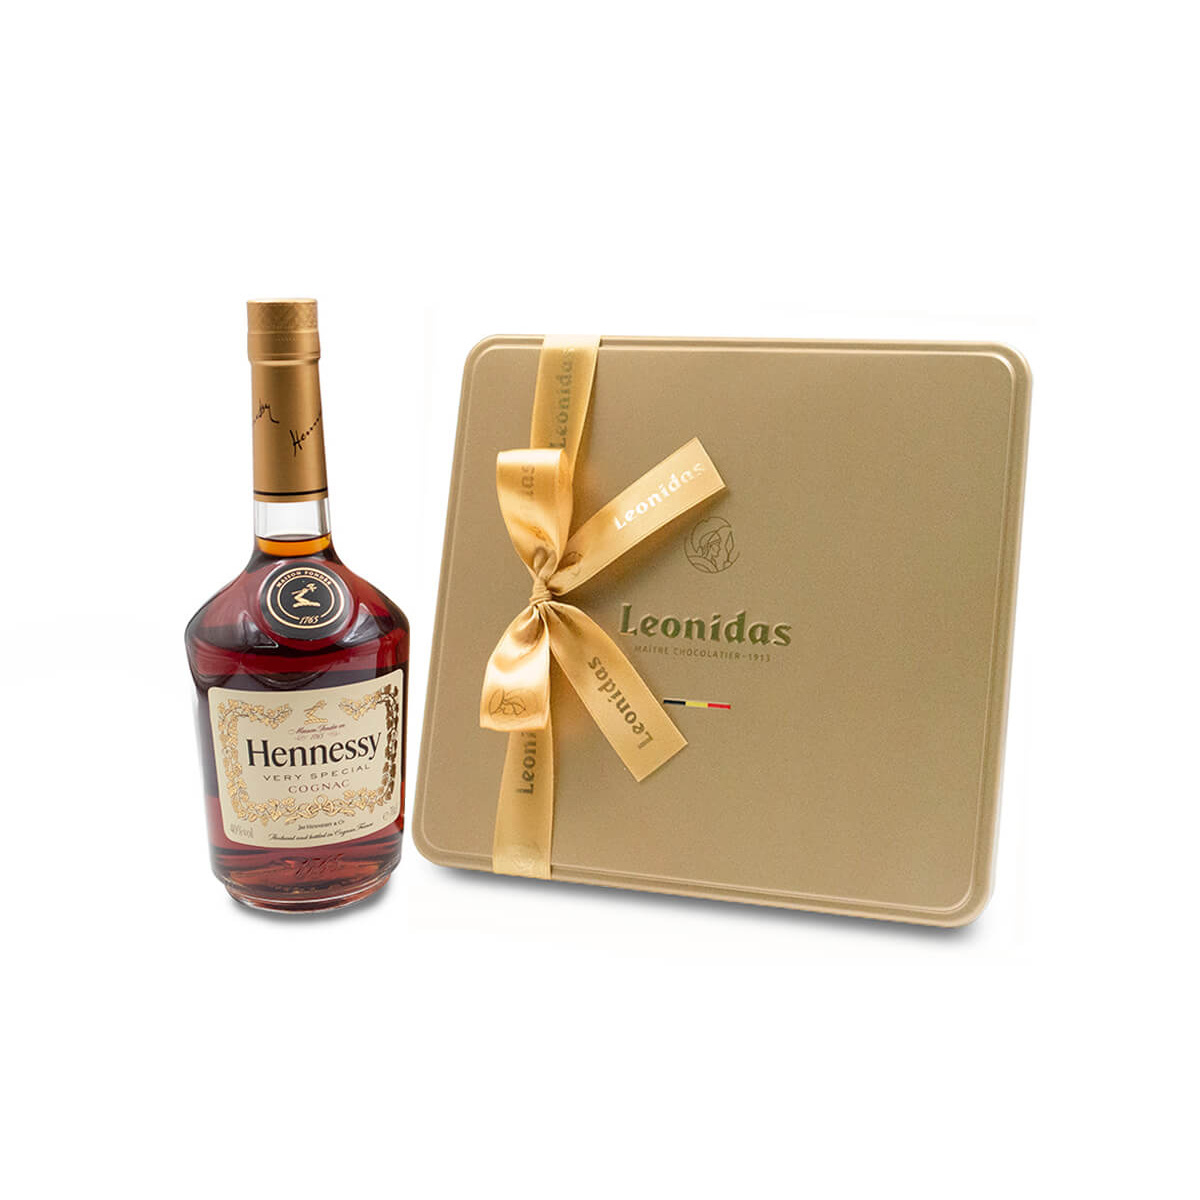 Χρυσή κασετίνα πολυτελείας “Heritage L” με ποικιλία πραλινών 470g και 1 φιάλη κονιάκ “Hennessy” V.S. 70cl